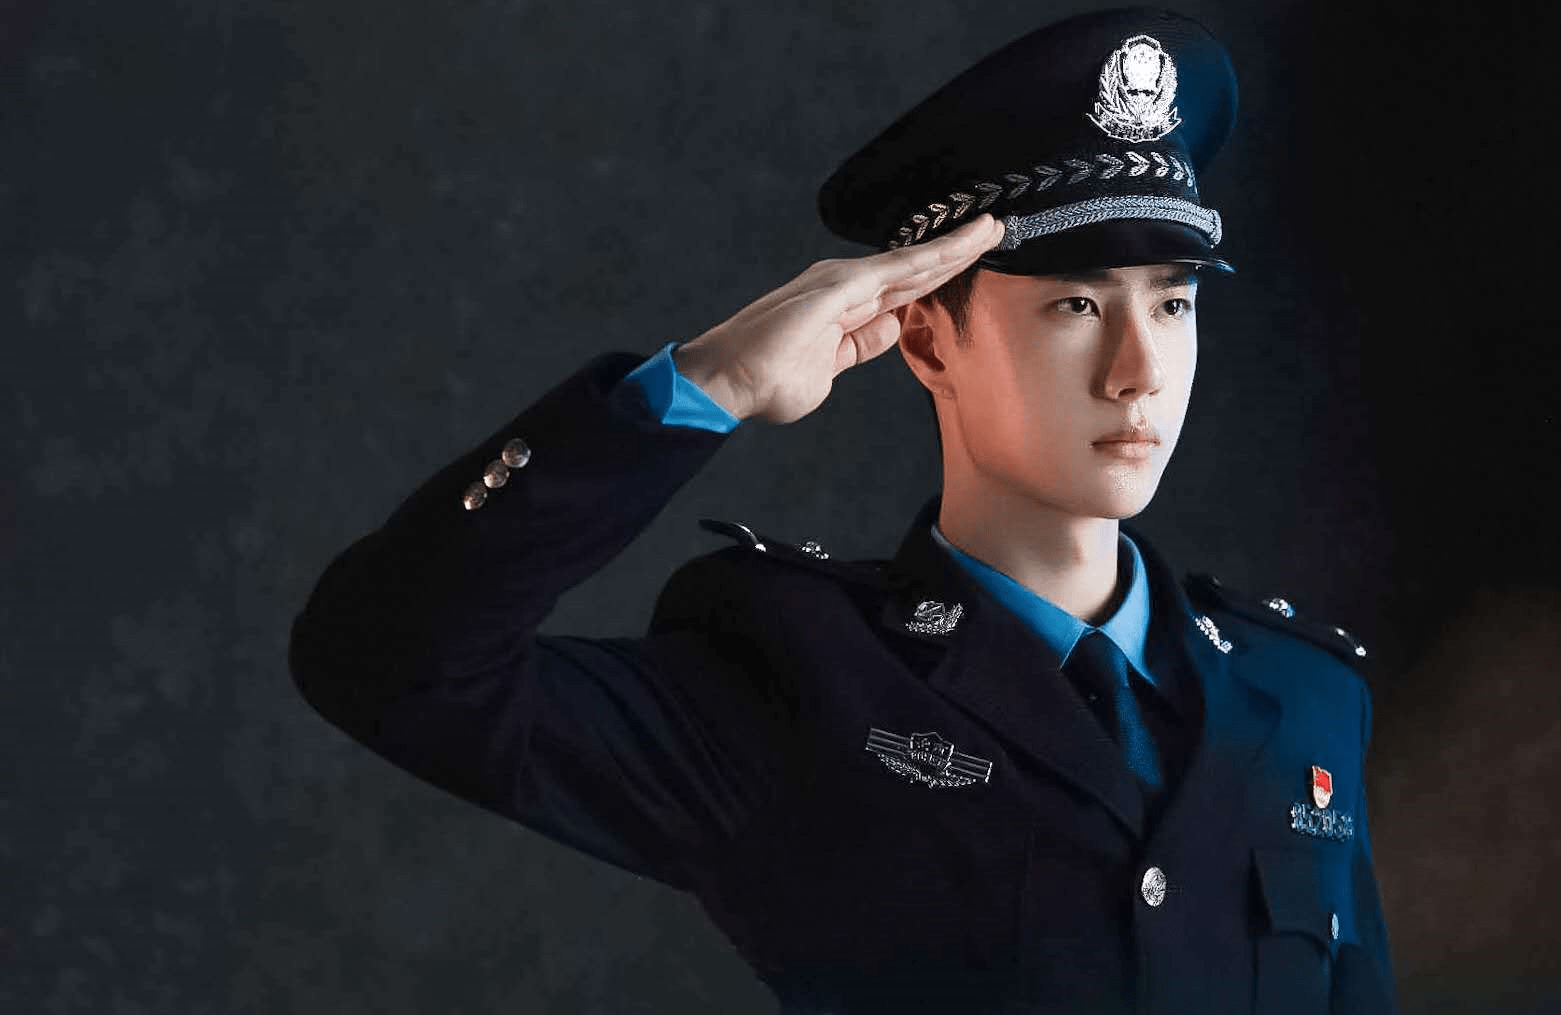 王一博穿警服出席活动,一举一动都像真的警官,满满的正能量